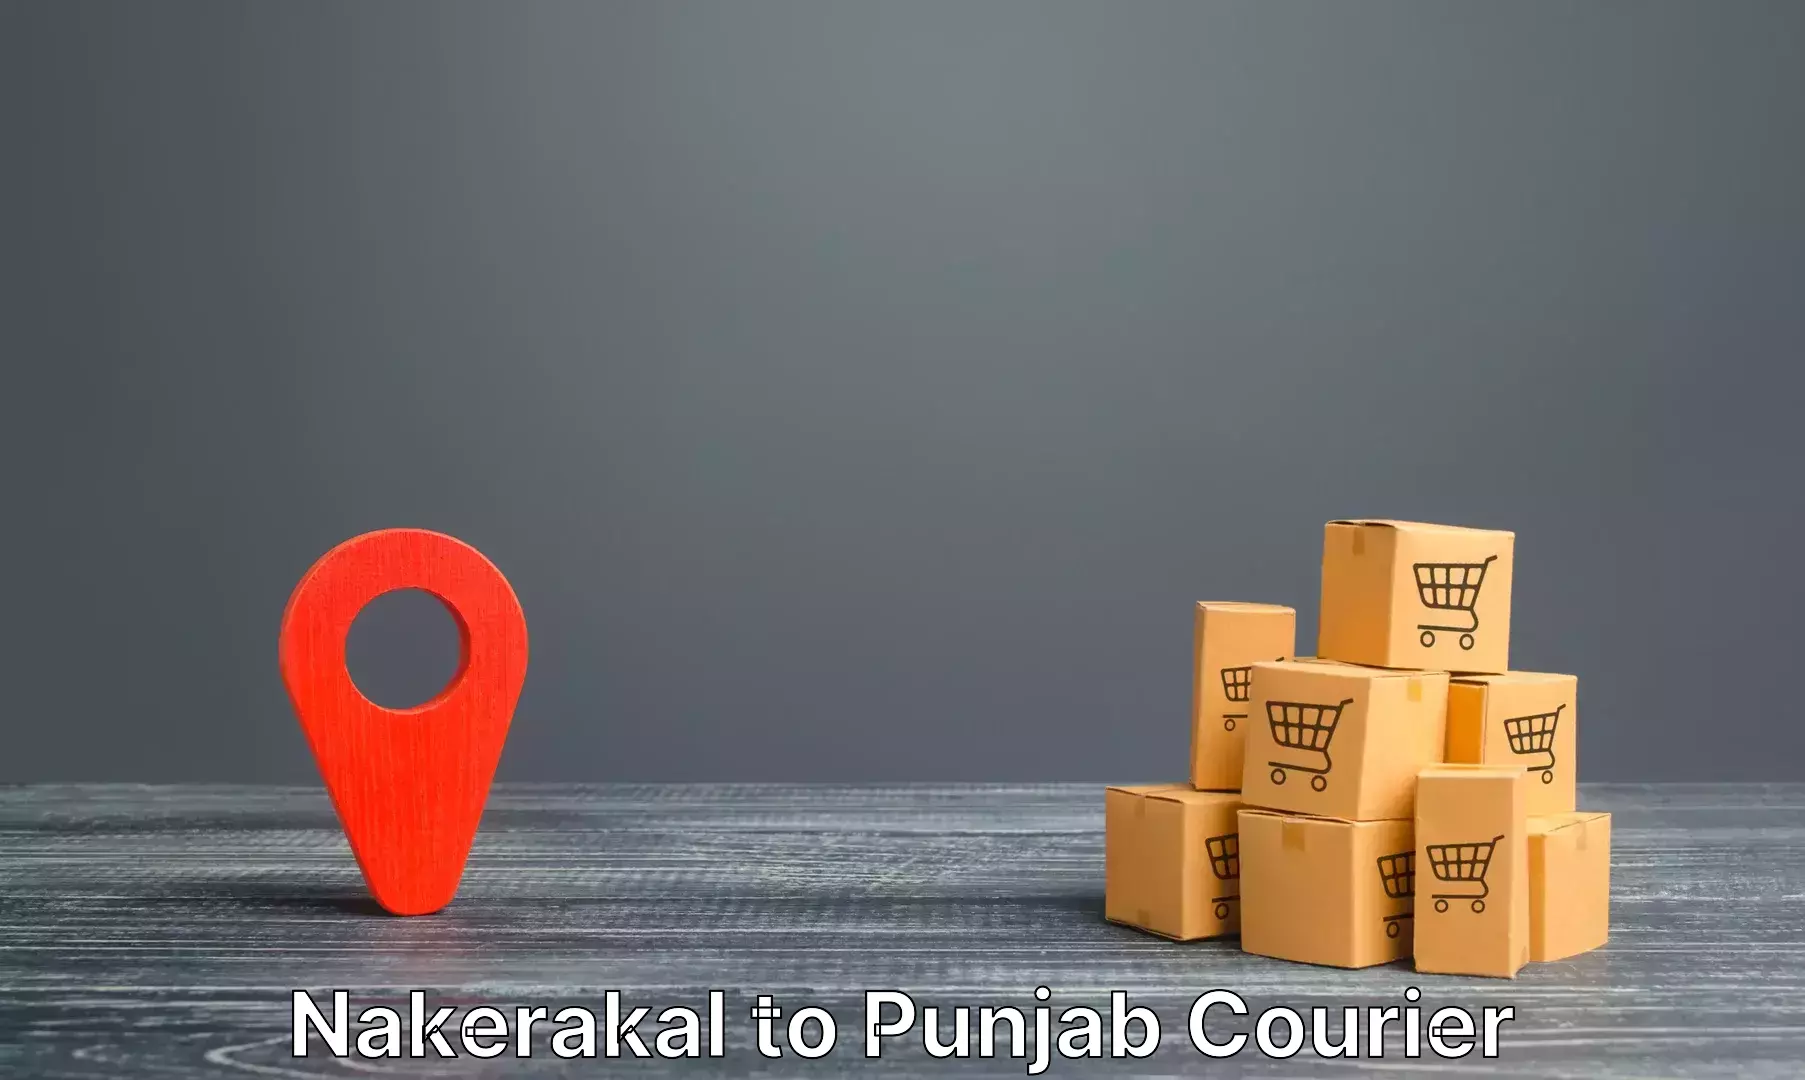 Luggage transport consultancy Nakerakal to Punjab